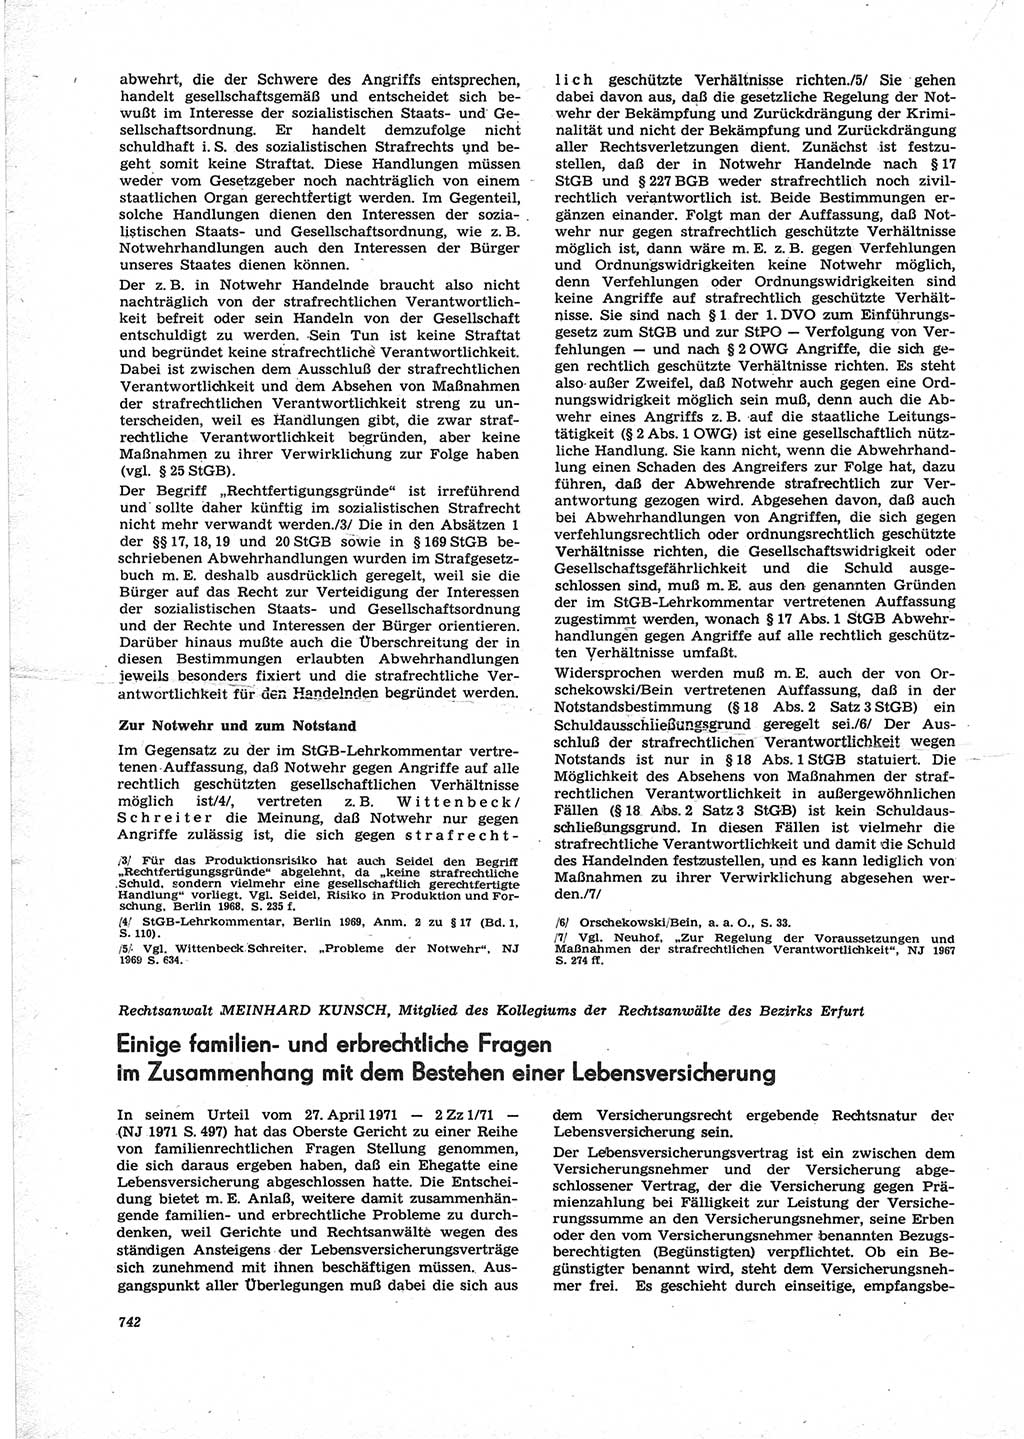 Neue Justiz (NJ), Zeitschrift für Recht und Rechtswissenschaft [Deutsche Demokratische Republik (DDR)], 25. Jahrgang 1971, Seite 742 (NJ DDR 1971, S. 742)